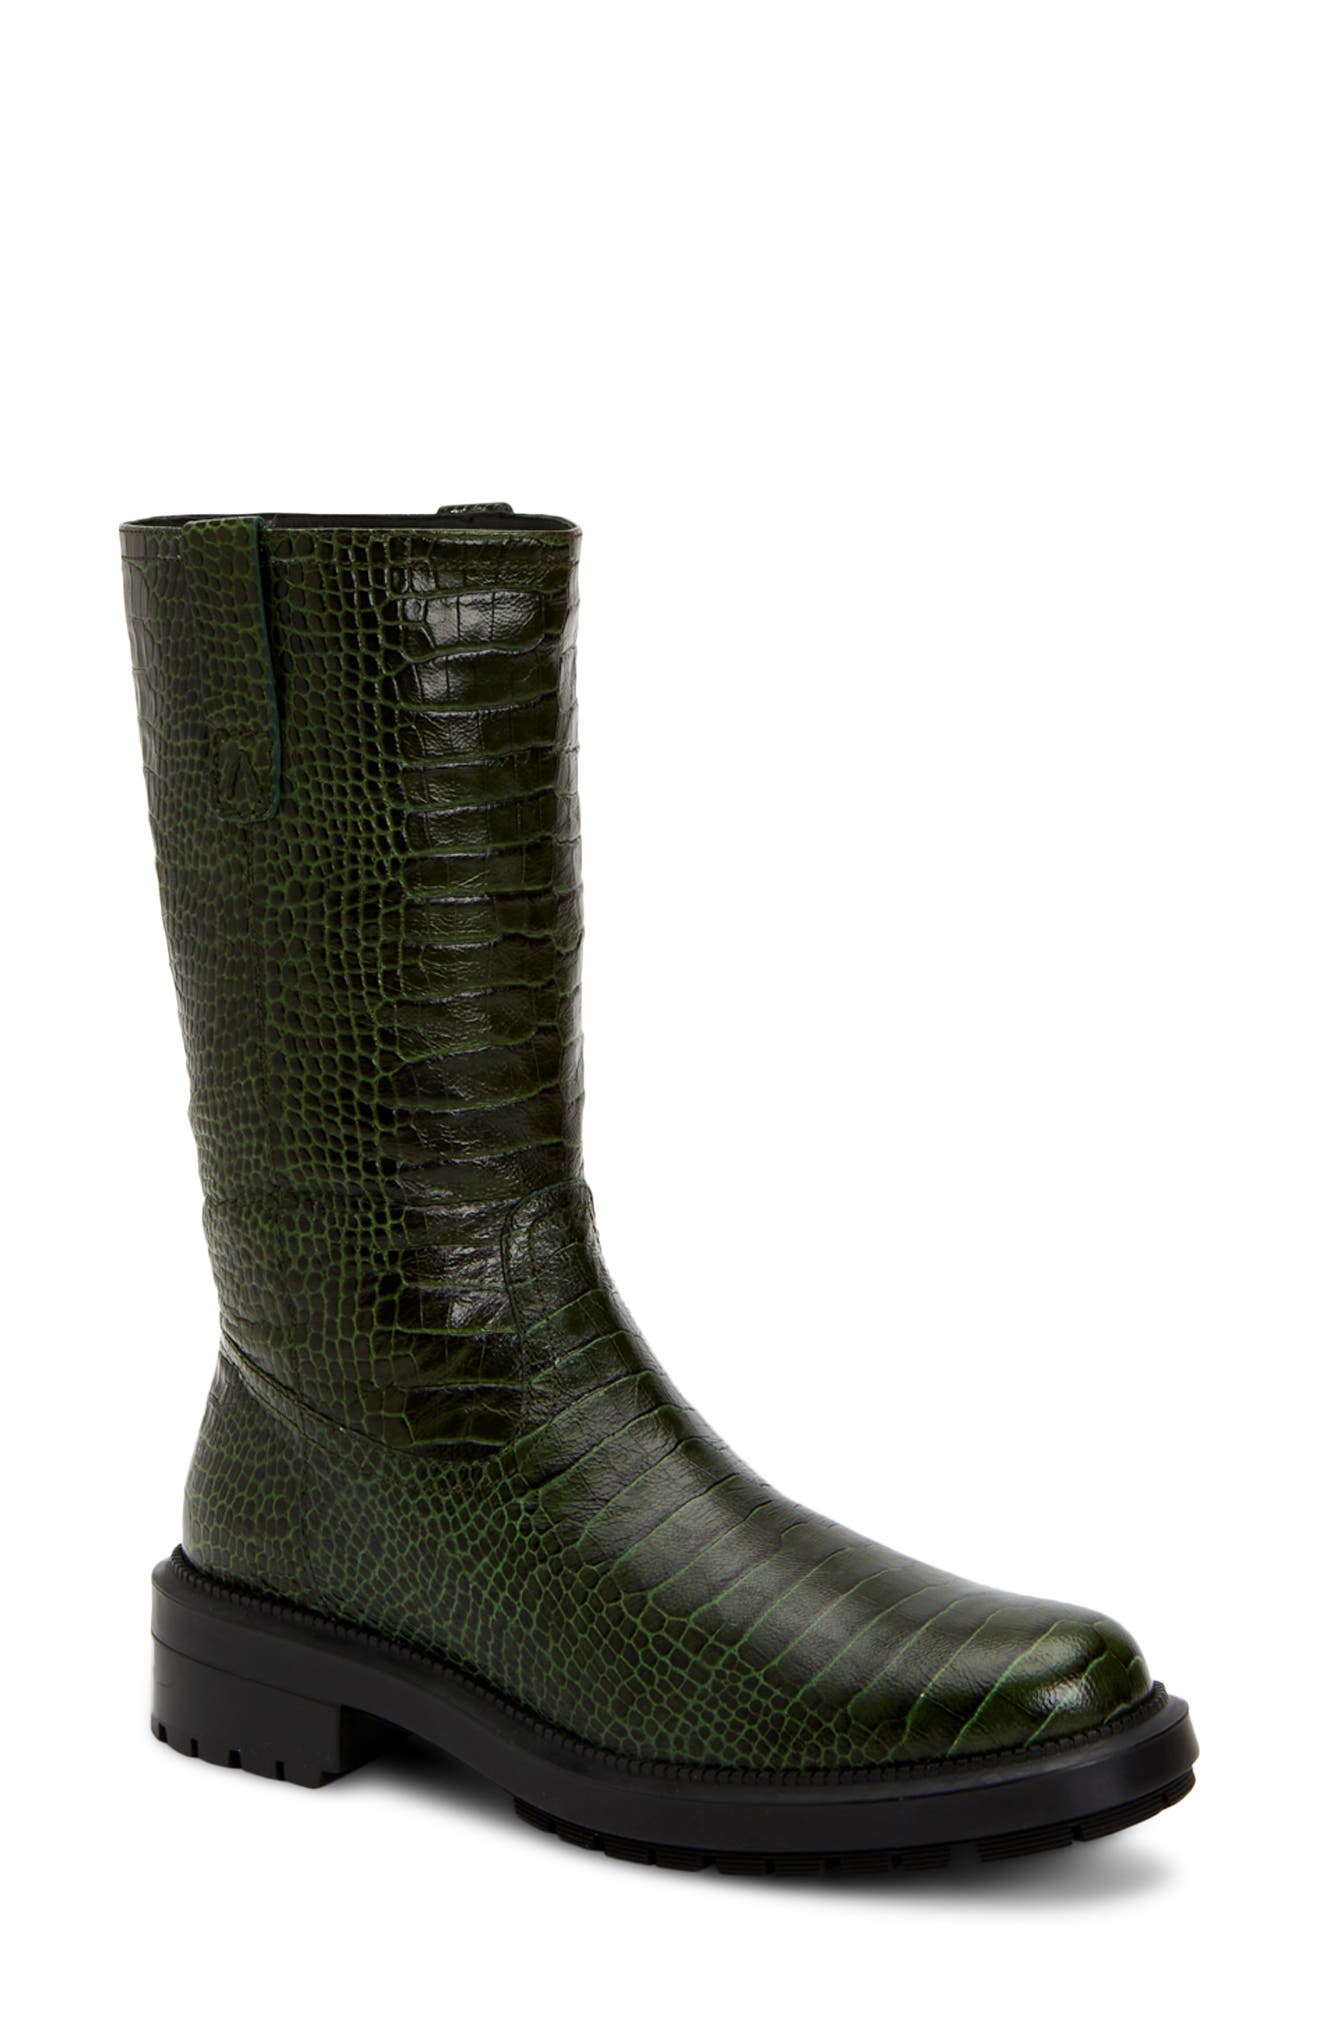 aquatalia mid calf boots